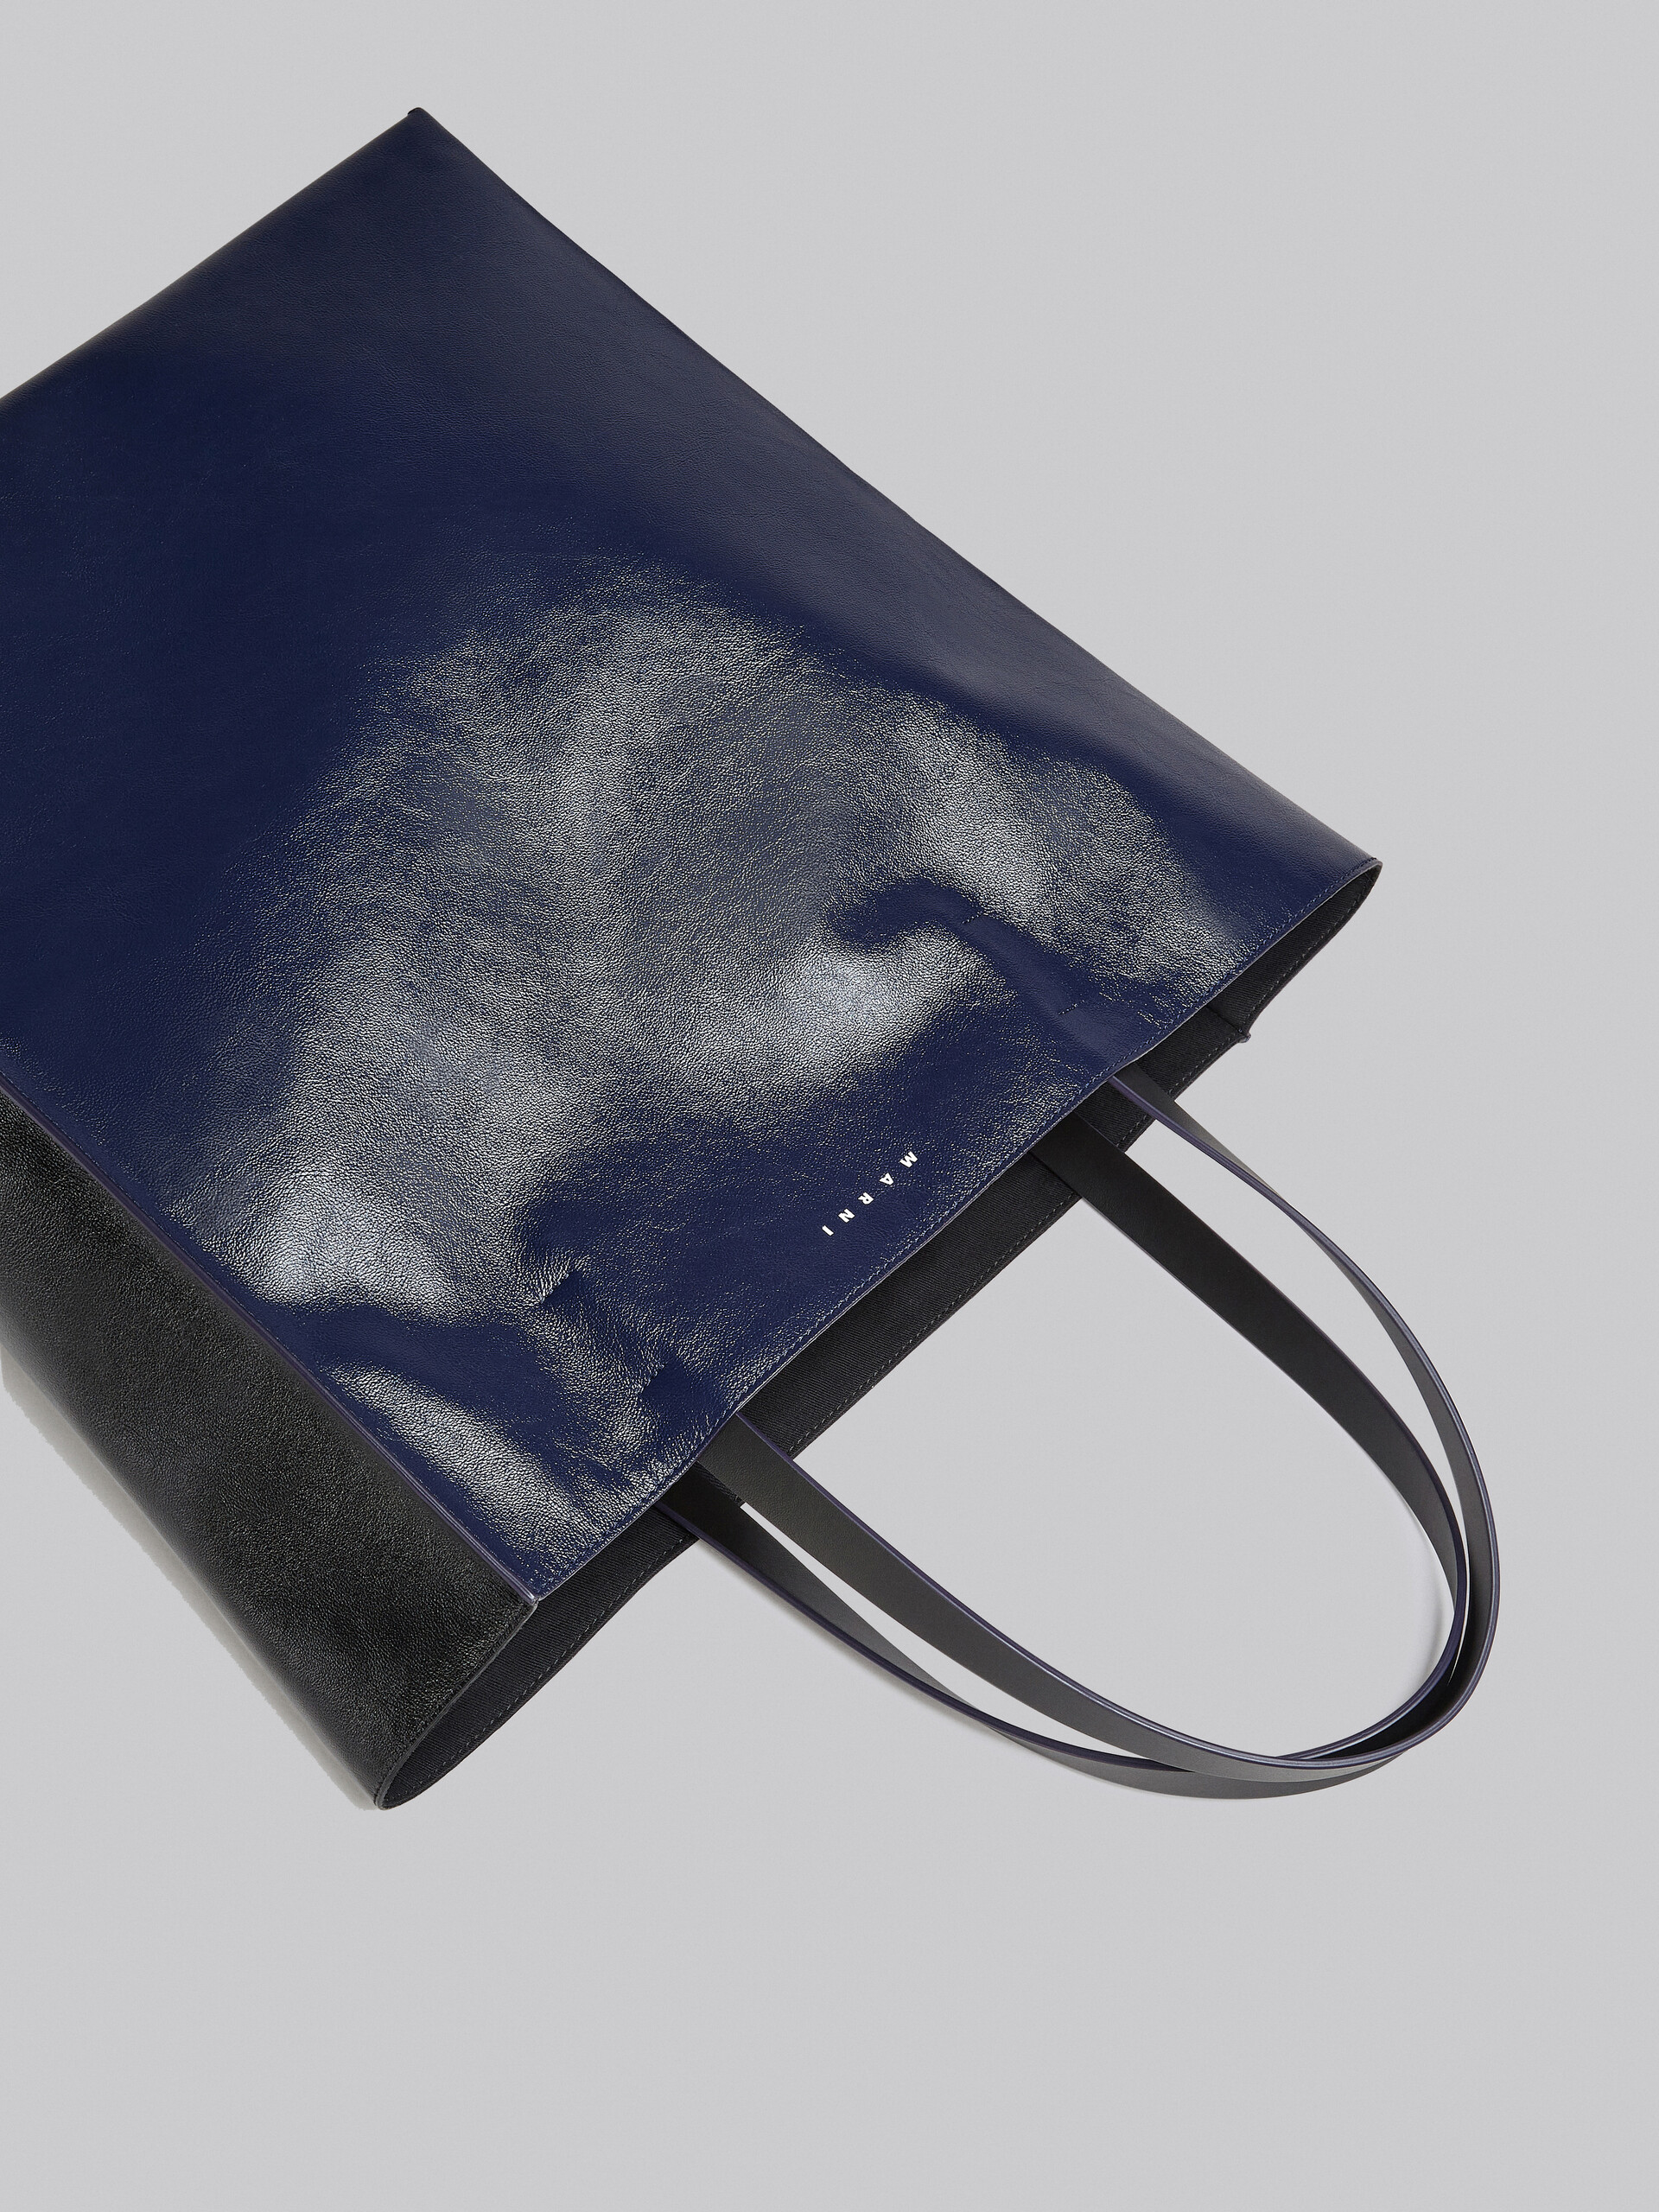 Grand sac Museo Soft en cuir noir et bleu - Sacs cabas - Image 5